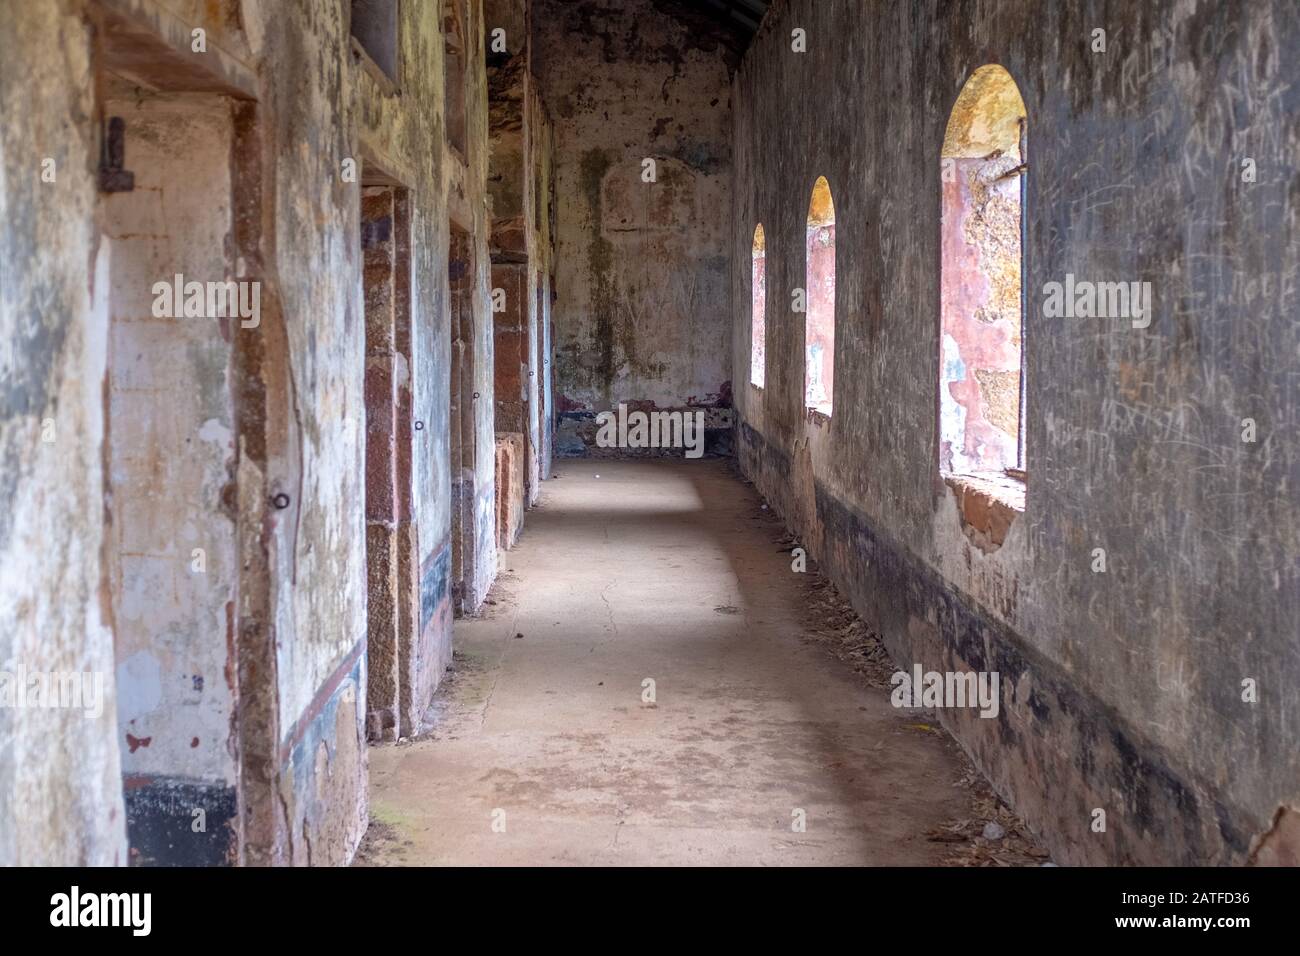 Interno di una colonia penale abbandonata o prigione sulle isole Della Salvezza, preso in un giorno coperto senza persone, Guiana francese Foto Stock